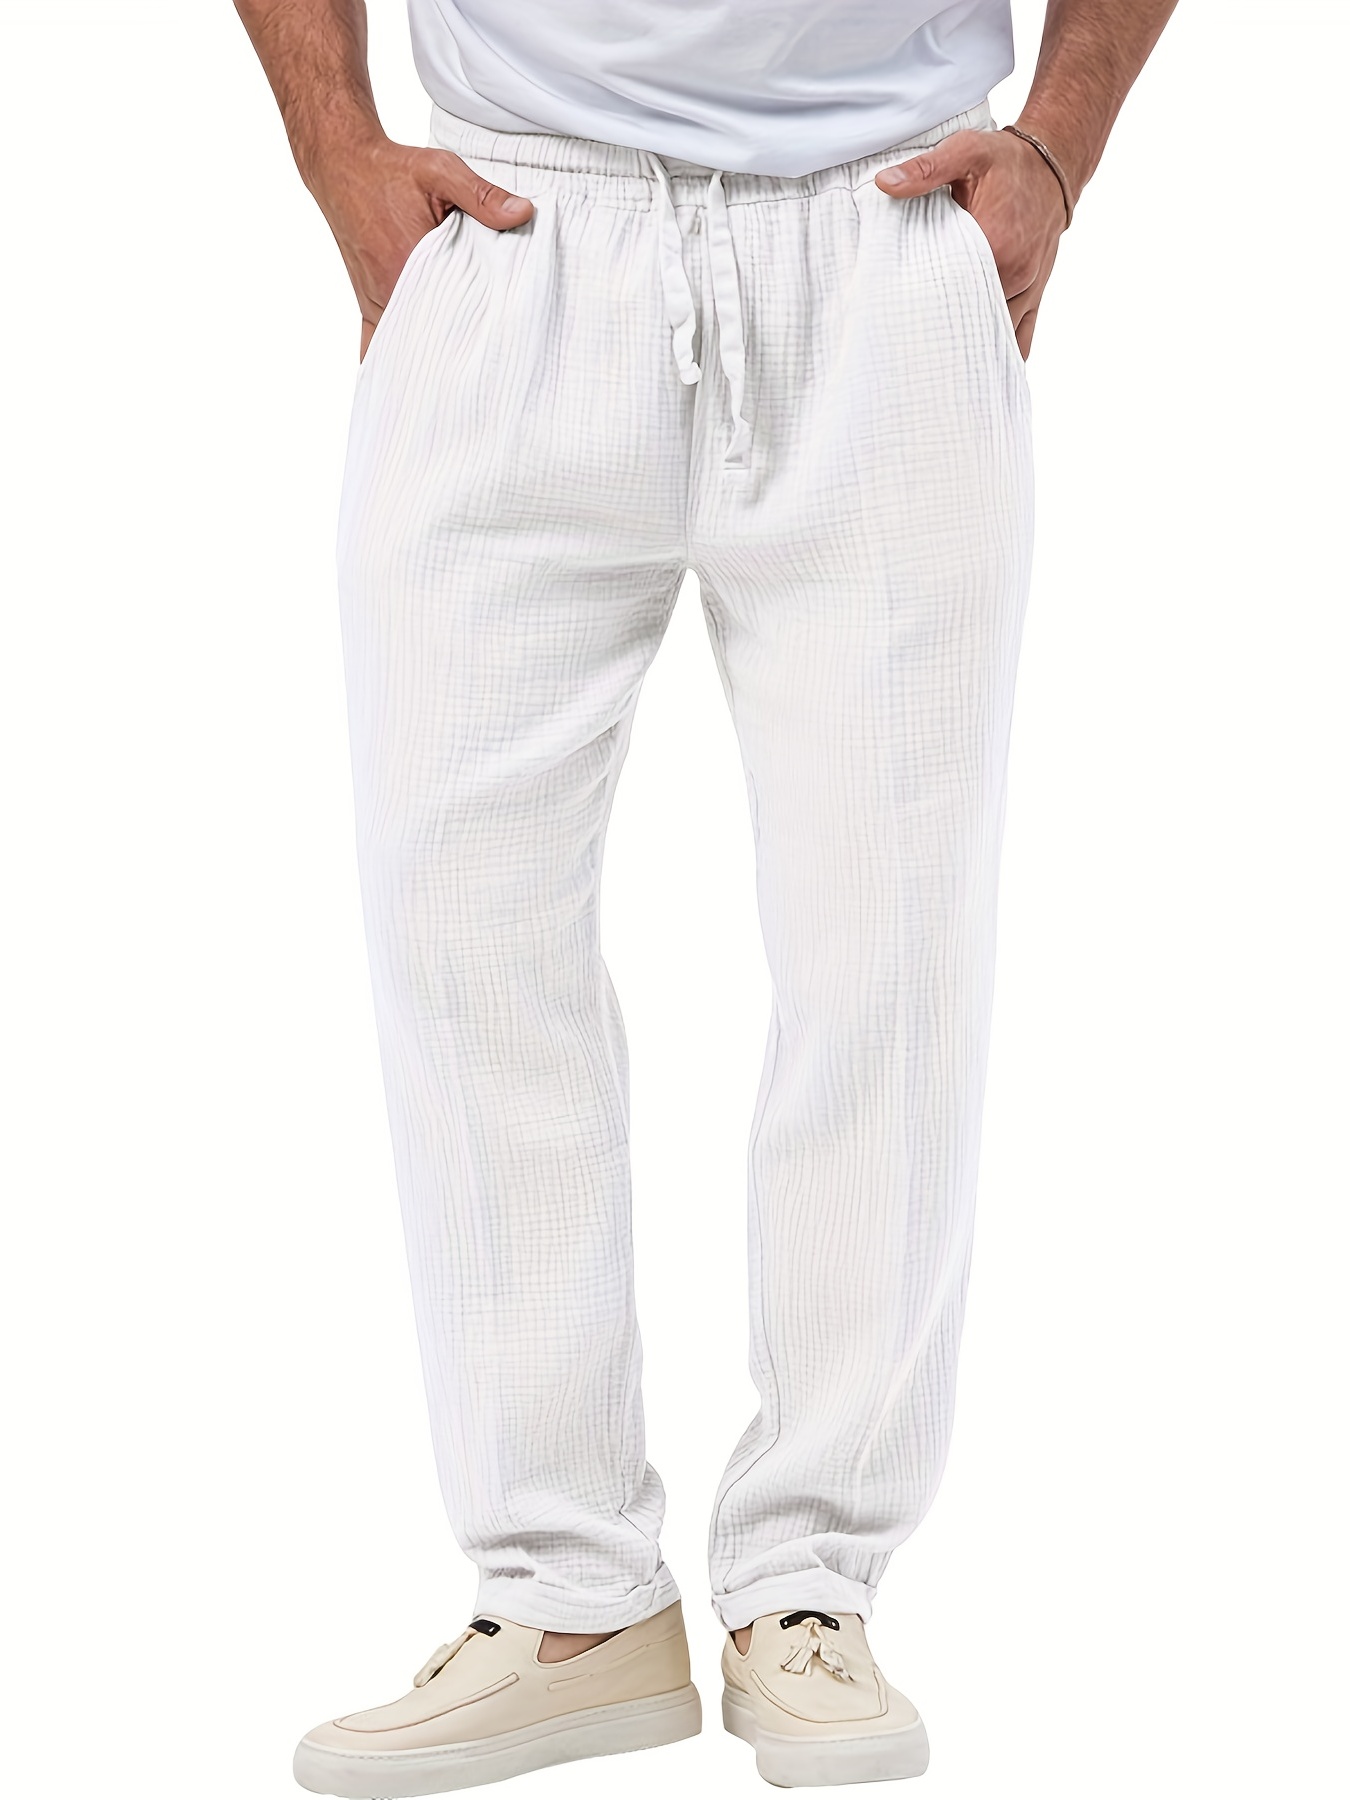 Zkozptok Men's Cotton Linen Pants Casual Comfy Baggy Fit